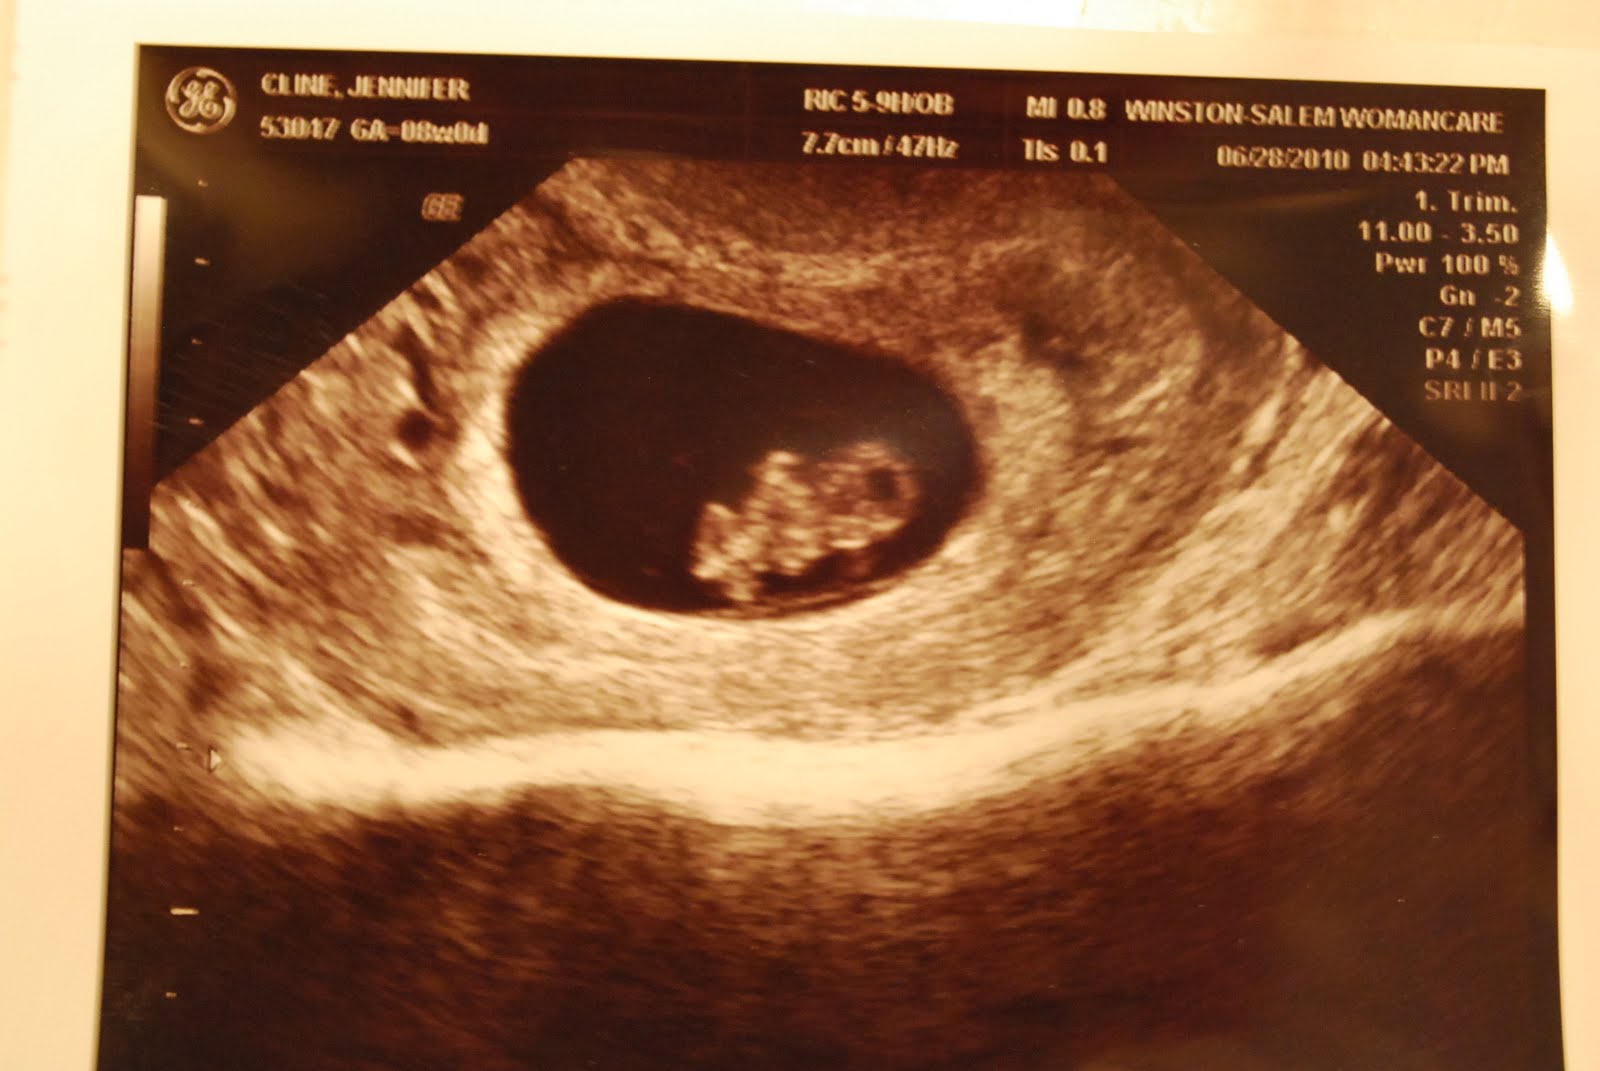 Через 6 8 недель. 8 Недель беременности фото плода на УЗИ. Фото УЗИ на 8 неделе беременности акушерской. Снимок УЗИ эмбриона на 8 неделе беременности. УЗИ на 8 неделе беременности акушерской.